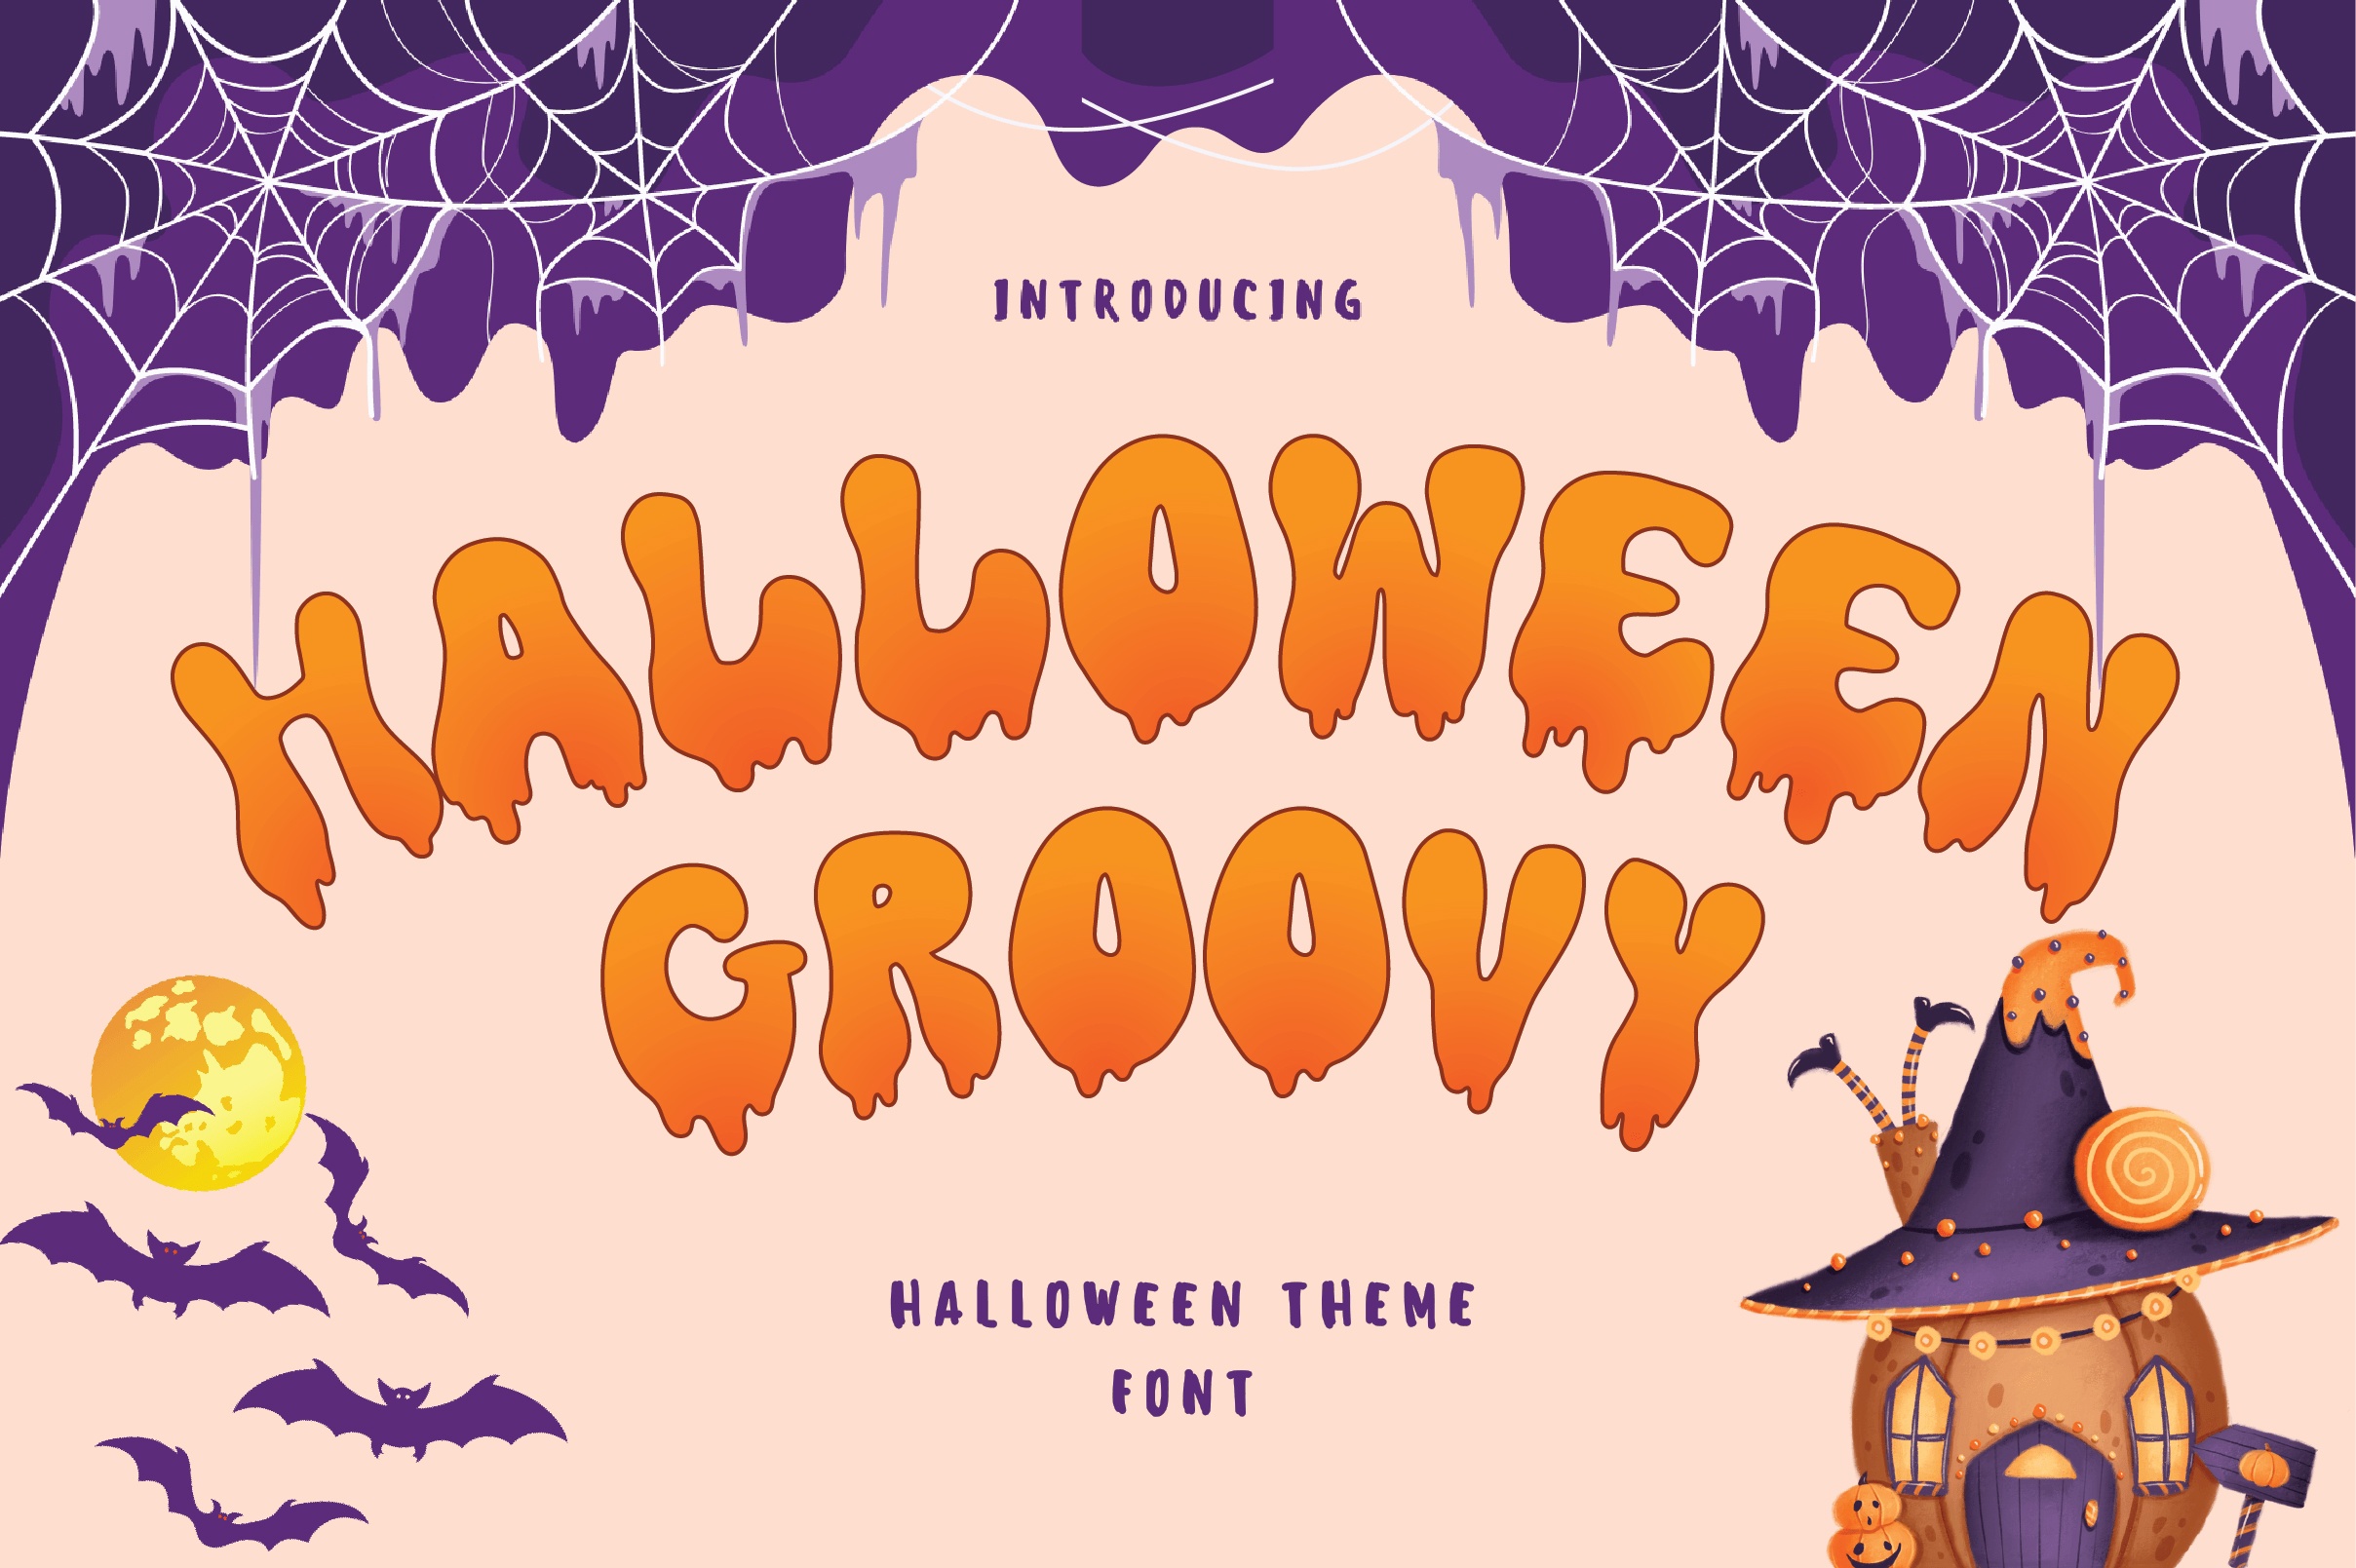 Beispiel einer Halloween Groovy-Schriftart